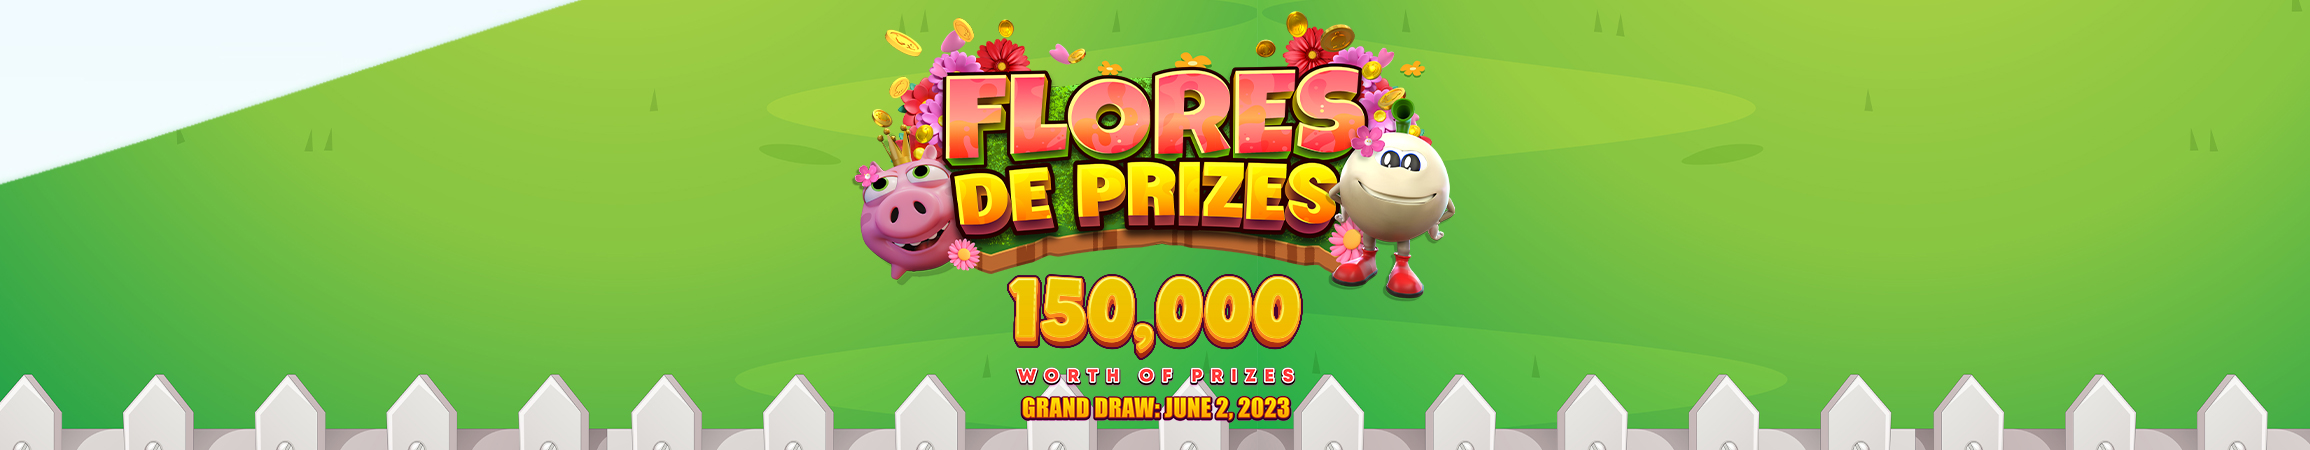 FBM® lanza la campaña de mayo Flores de Prizes para celebrar esta floreada estación 